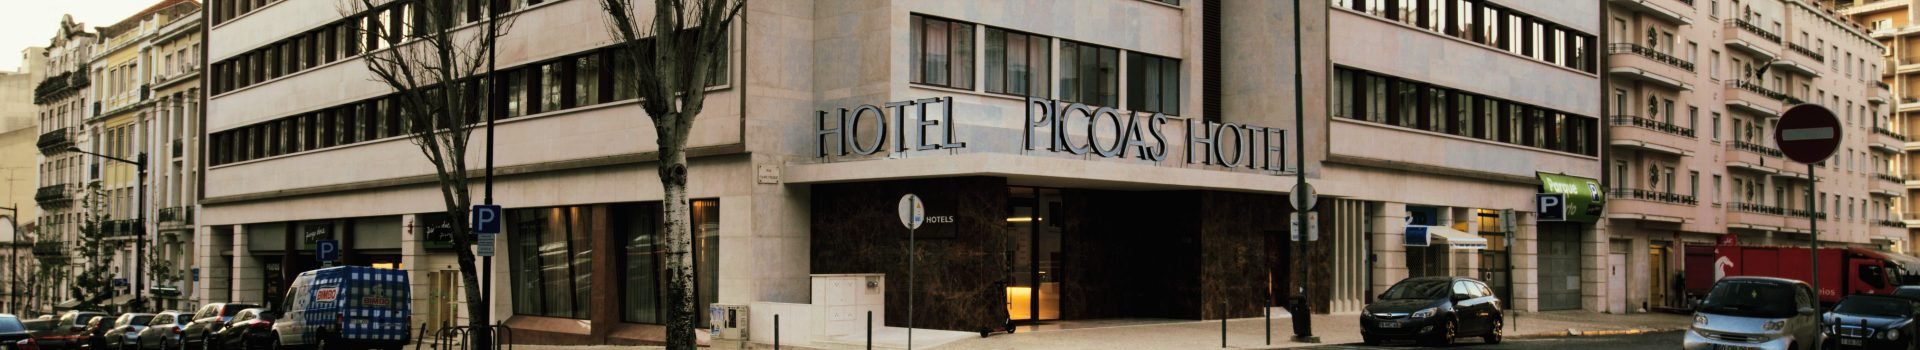 Localização e Contato VIP Executive Picoas Hotel Lisboa